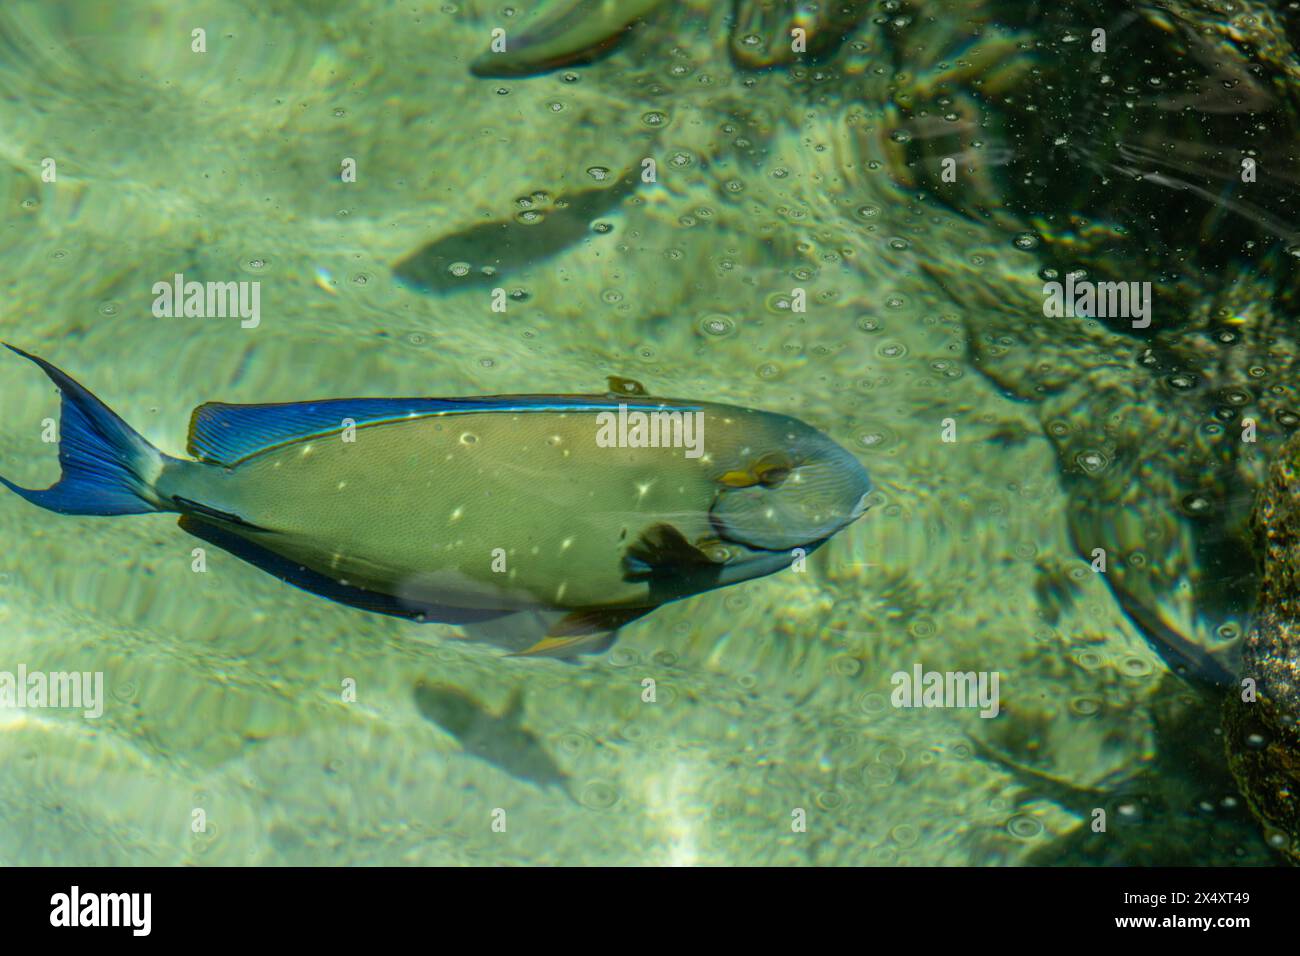 Ringtail Surgeonfish fish at the Maui Aquarium, Hawaii Stock Photo